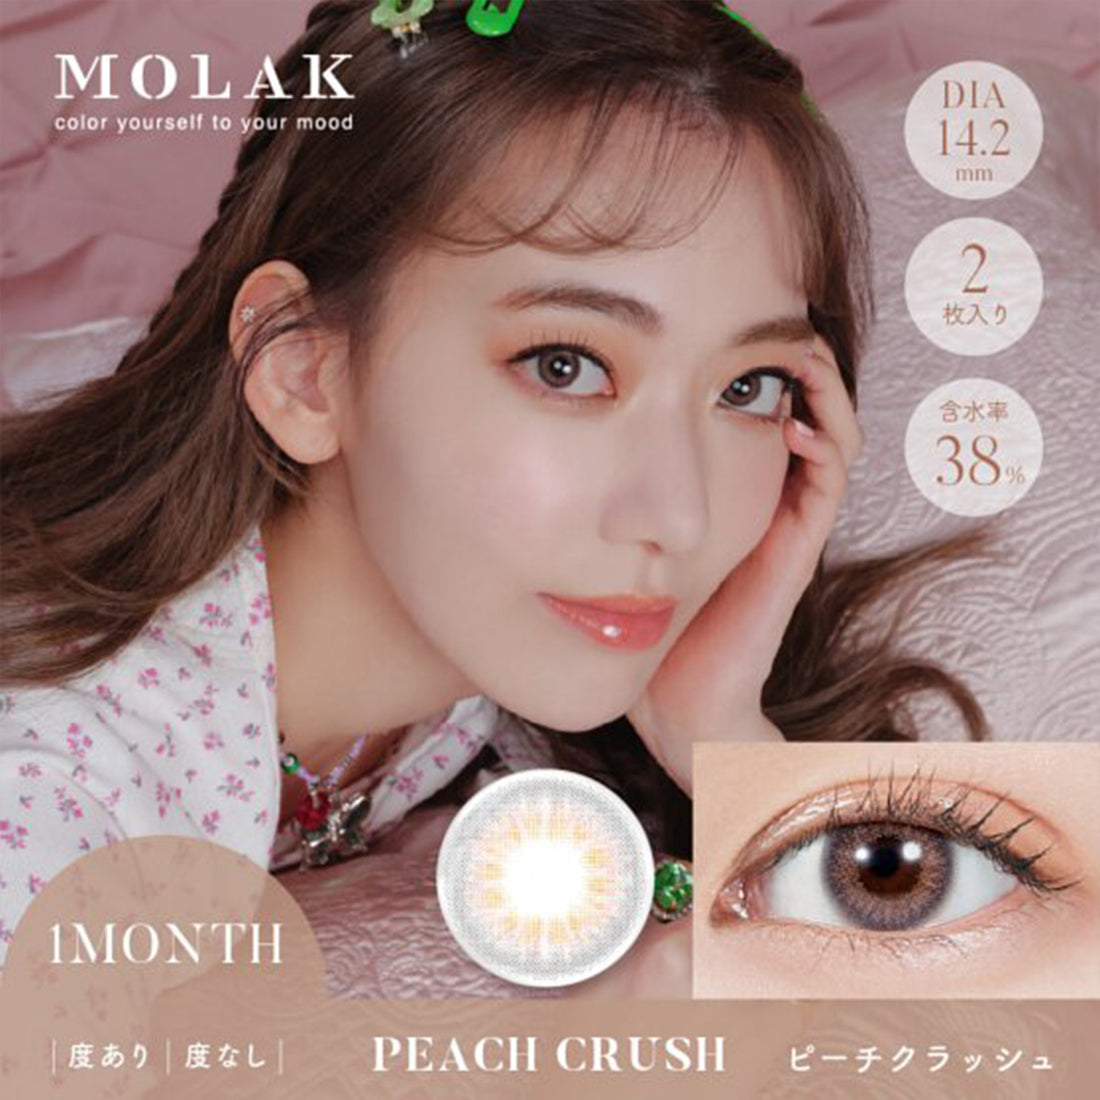 MOLAK 1Month Color Lens-Peach Crush 2pcs